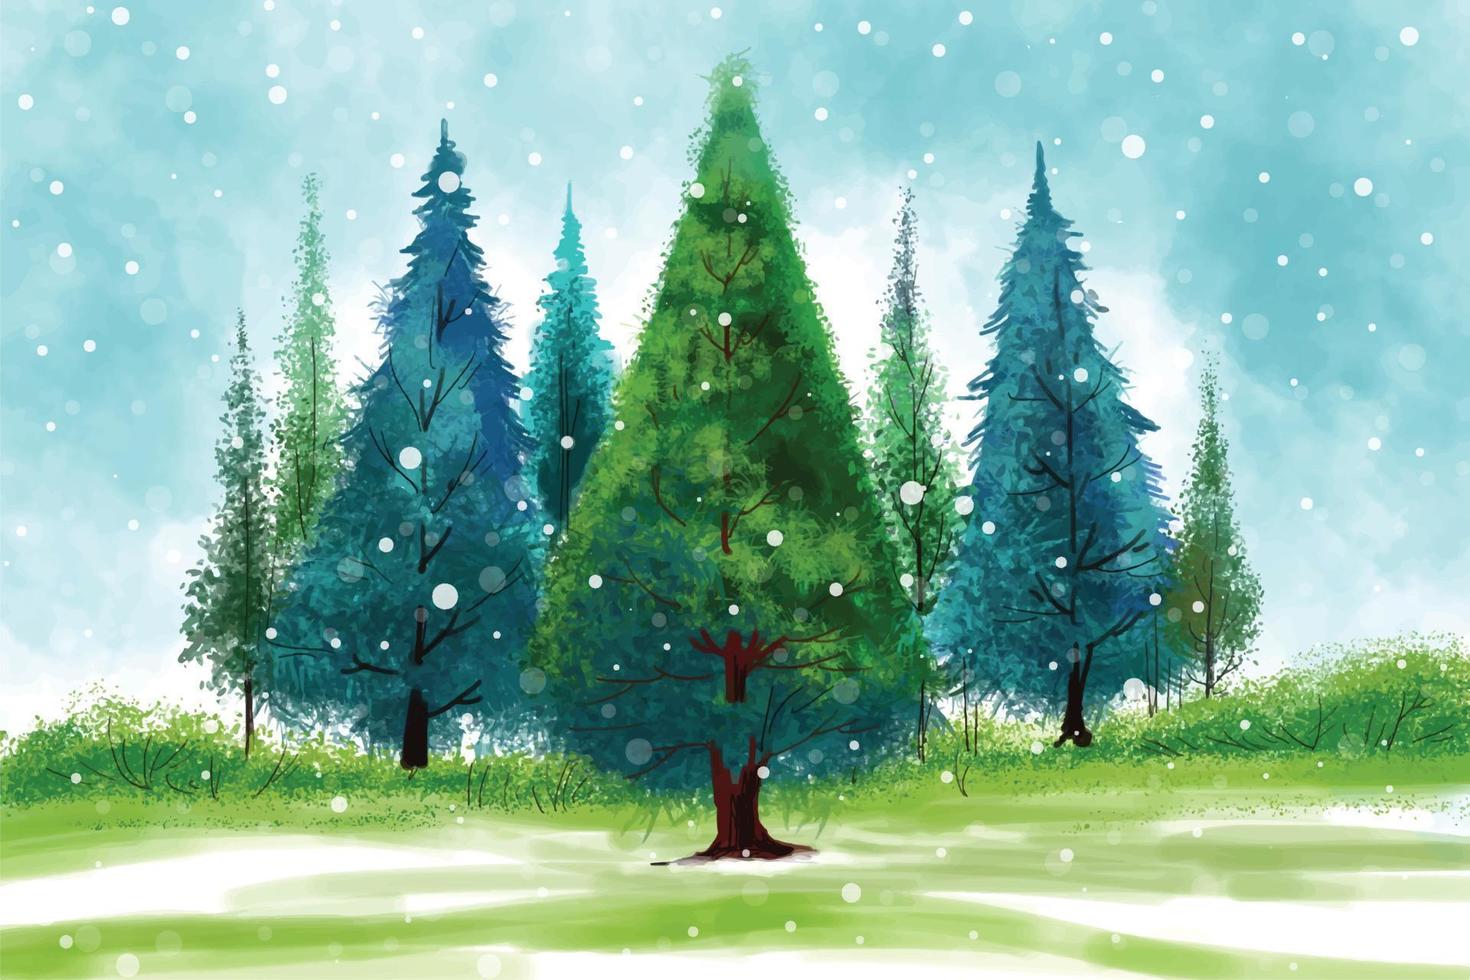 imponerande jul träd i vinter- landskap med snö kort bakgrund vektor